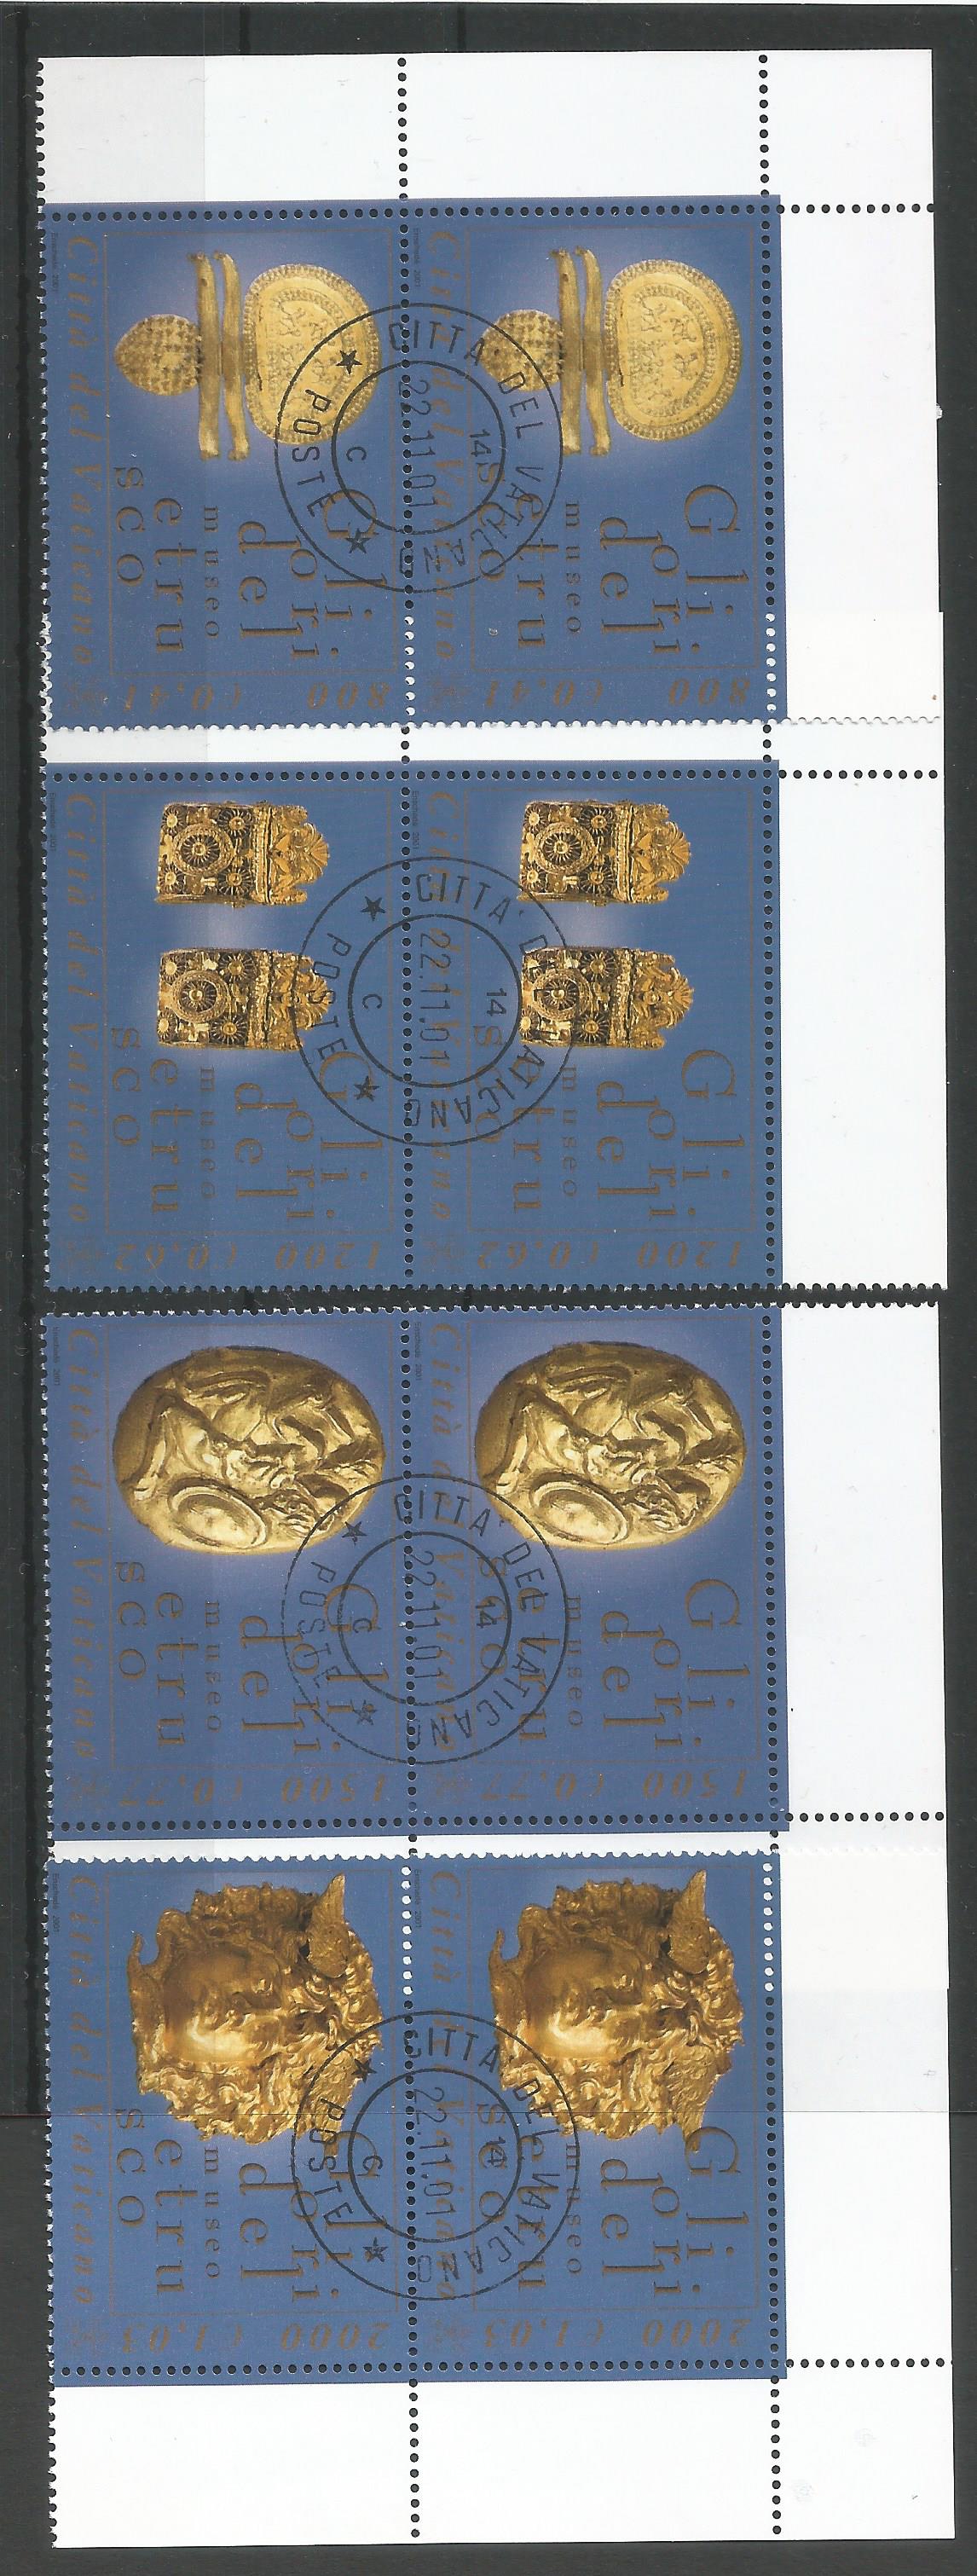 51597 - VATICANO - 2001 - Museo Etrusco - Coppie dei 4 valori con timbro postale del giorno di emissione - Unificato : 1253/56 - VTC019